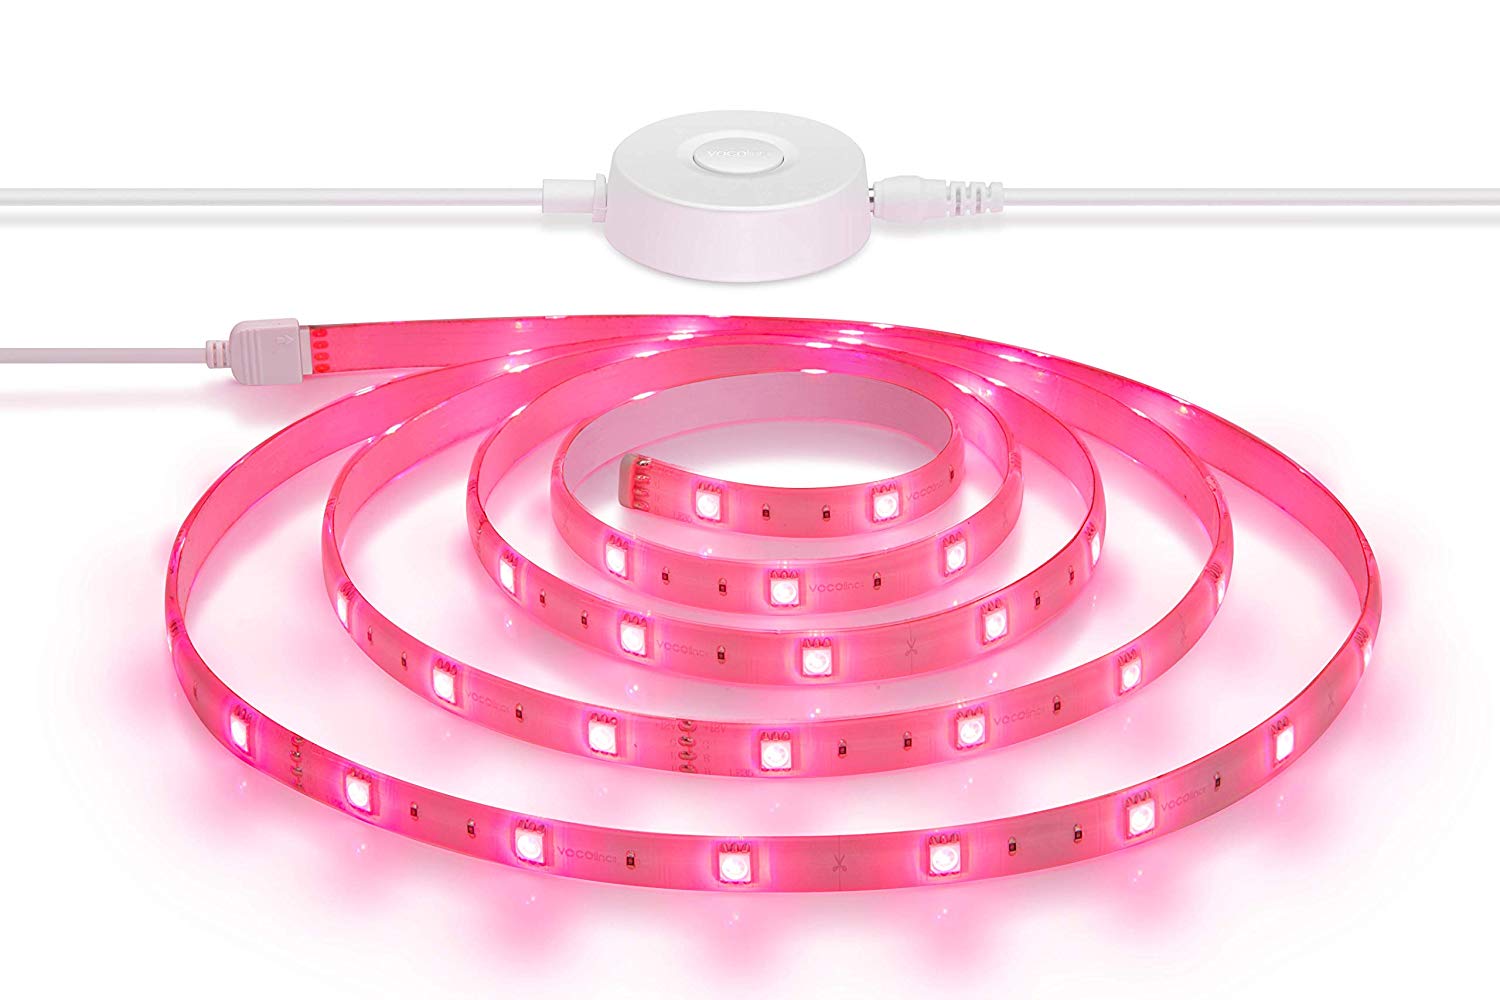 Ruban LED Connecté - INOLEDS multicolore avec prise